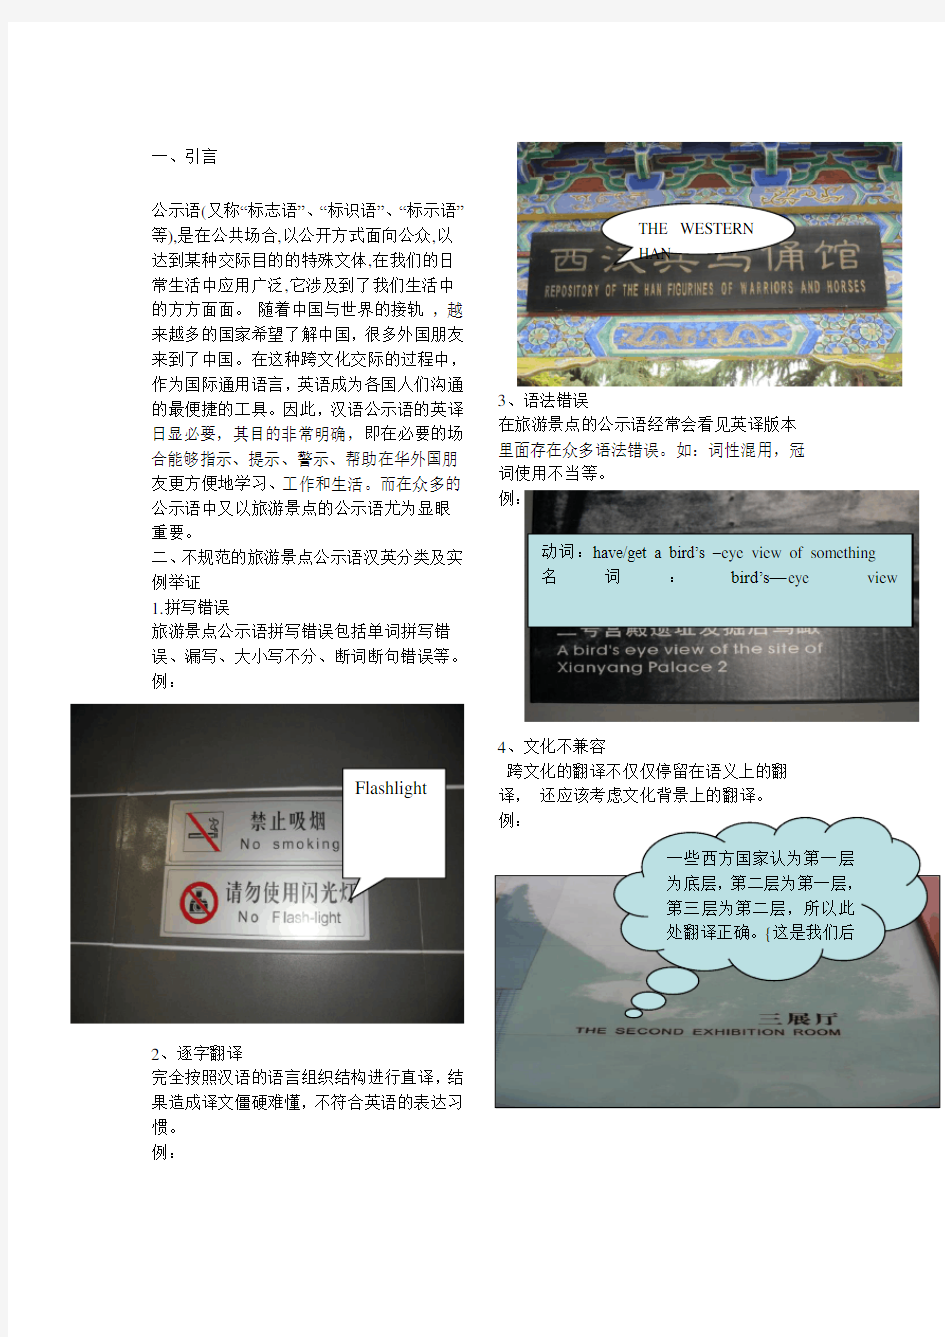 旅游景点公示语汉英翻译的现状分析及对策